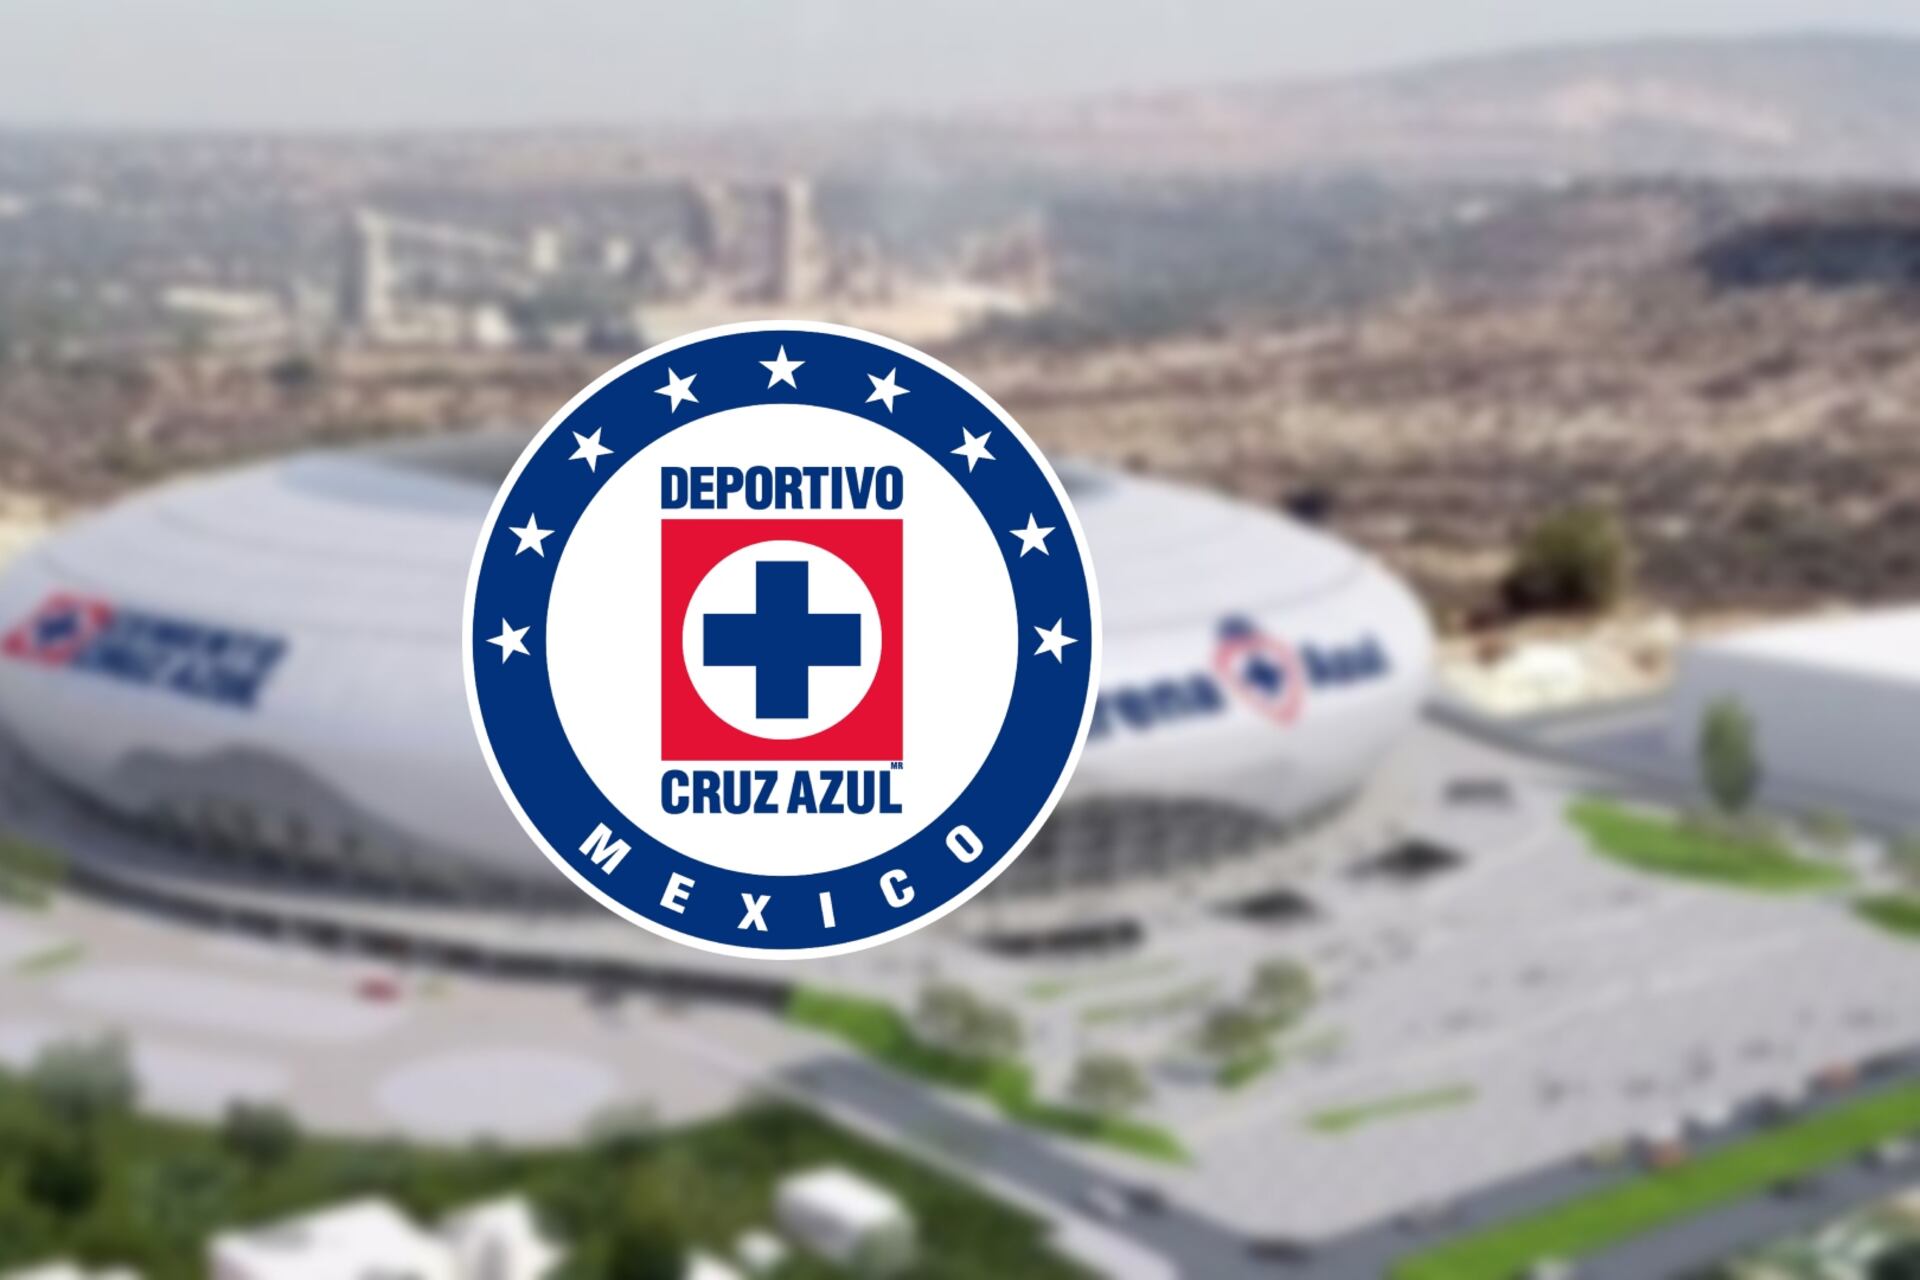 Previo al Rayados vs Cruz Azul, habrá nuevo estadio y los detalles que se comienzan a conocer del proyecto